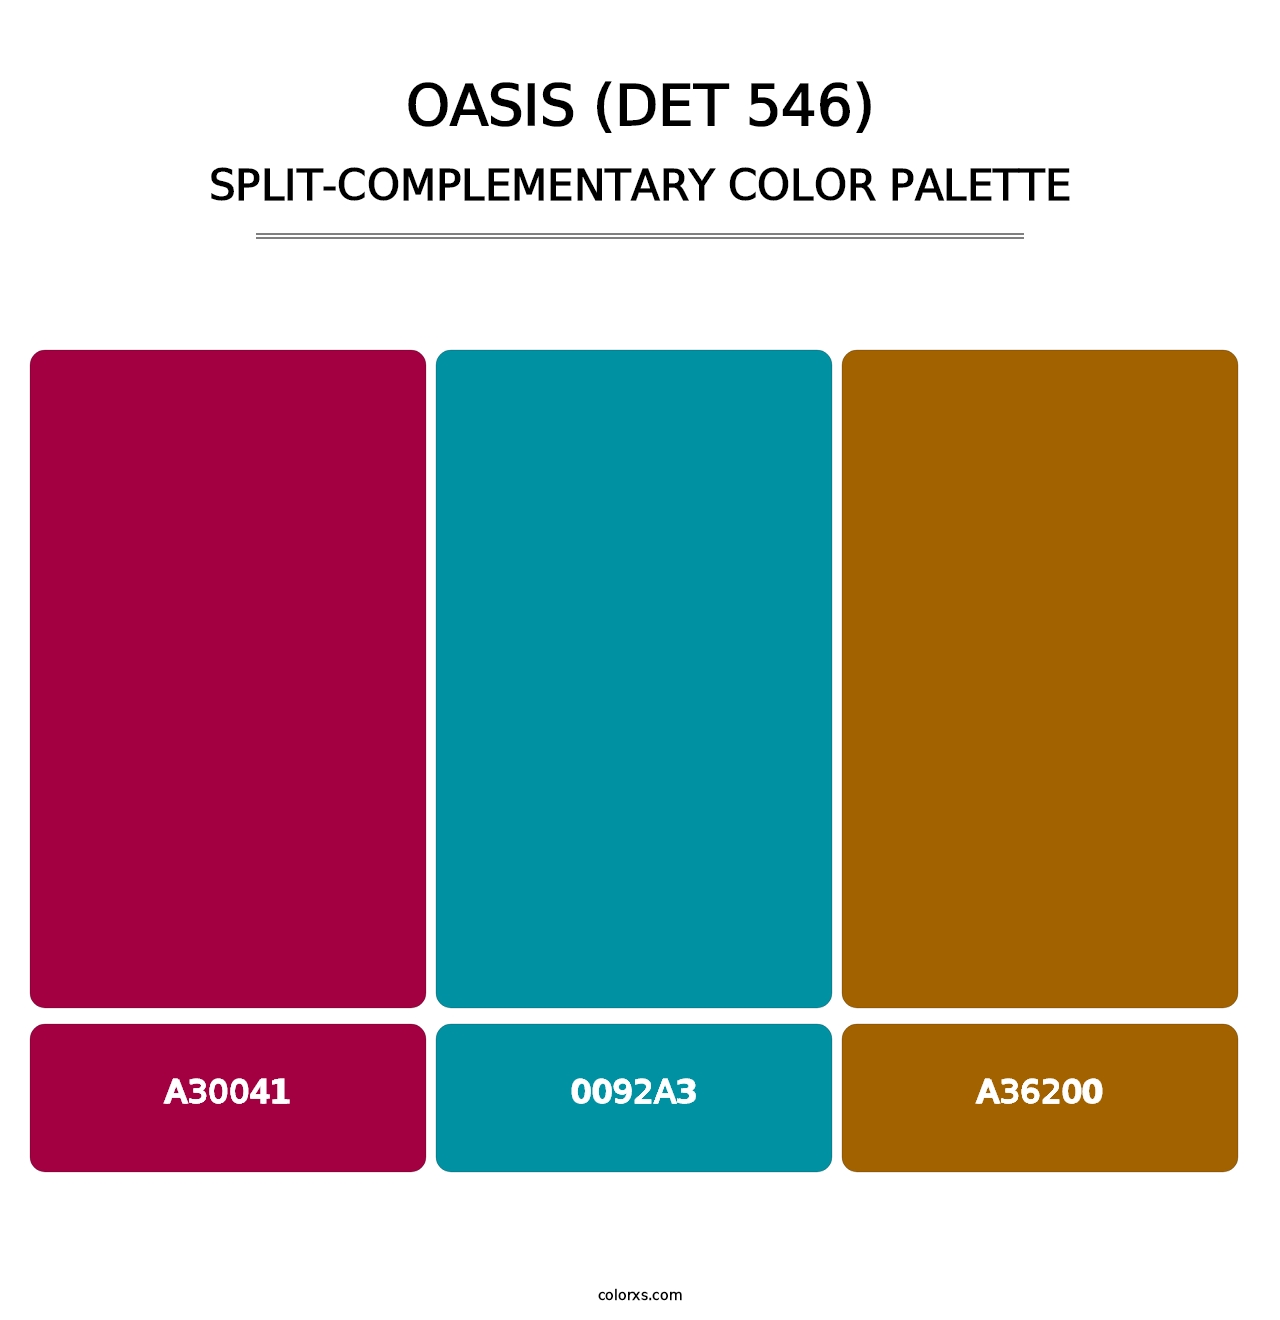 Oasis (DET 546) - Split-Complementary Color Palette